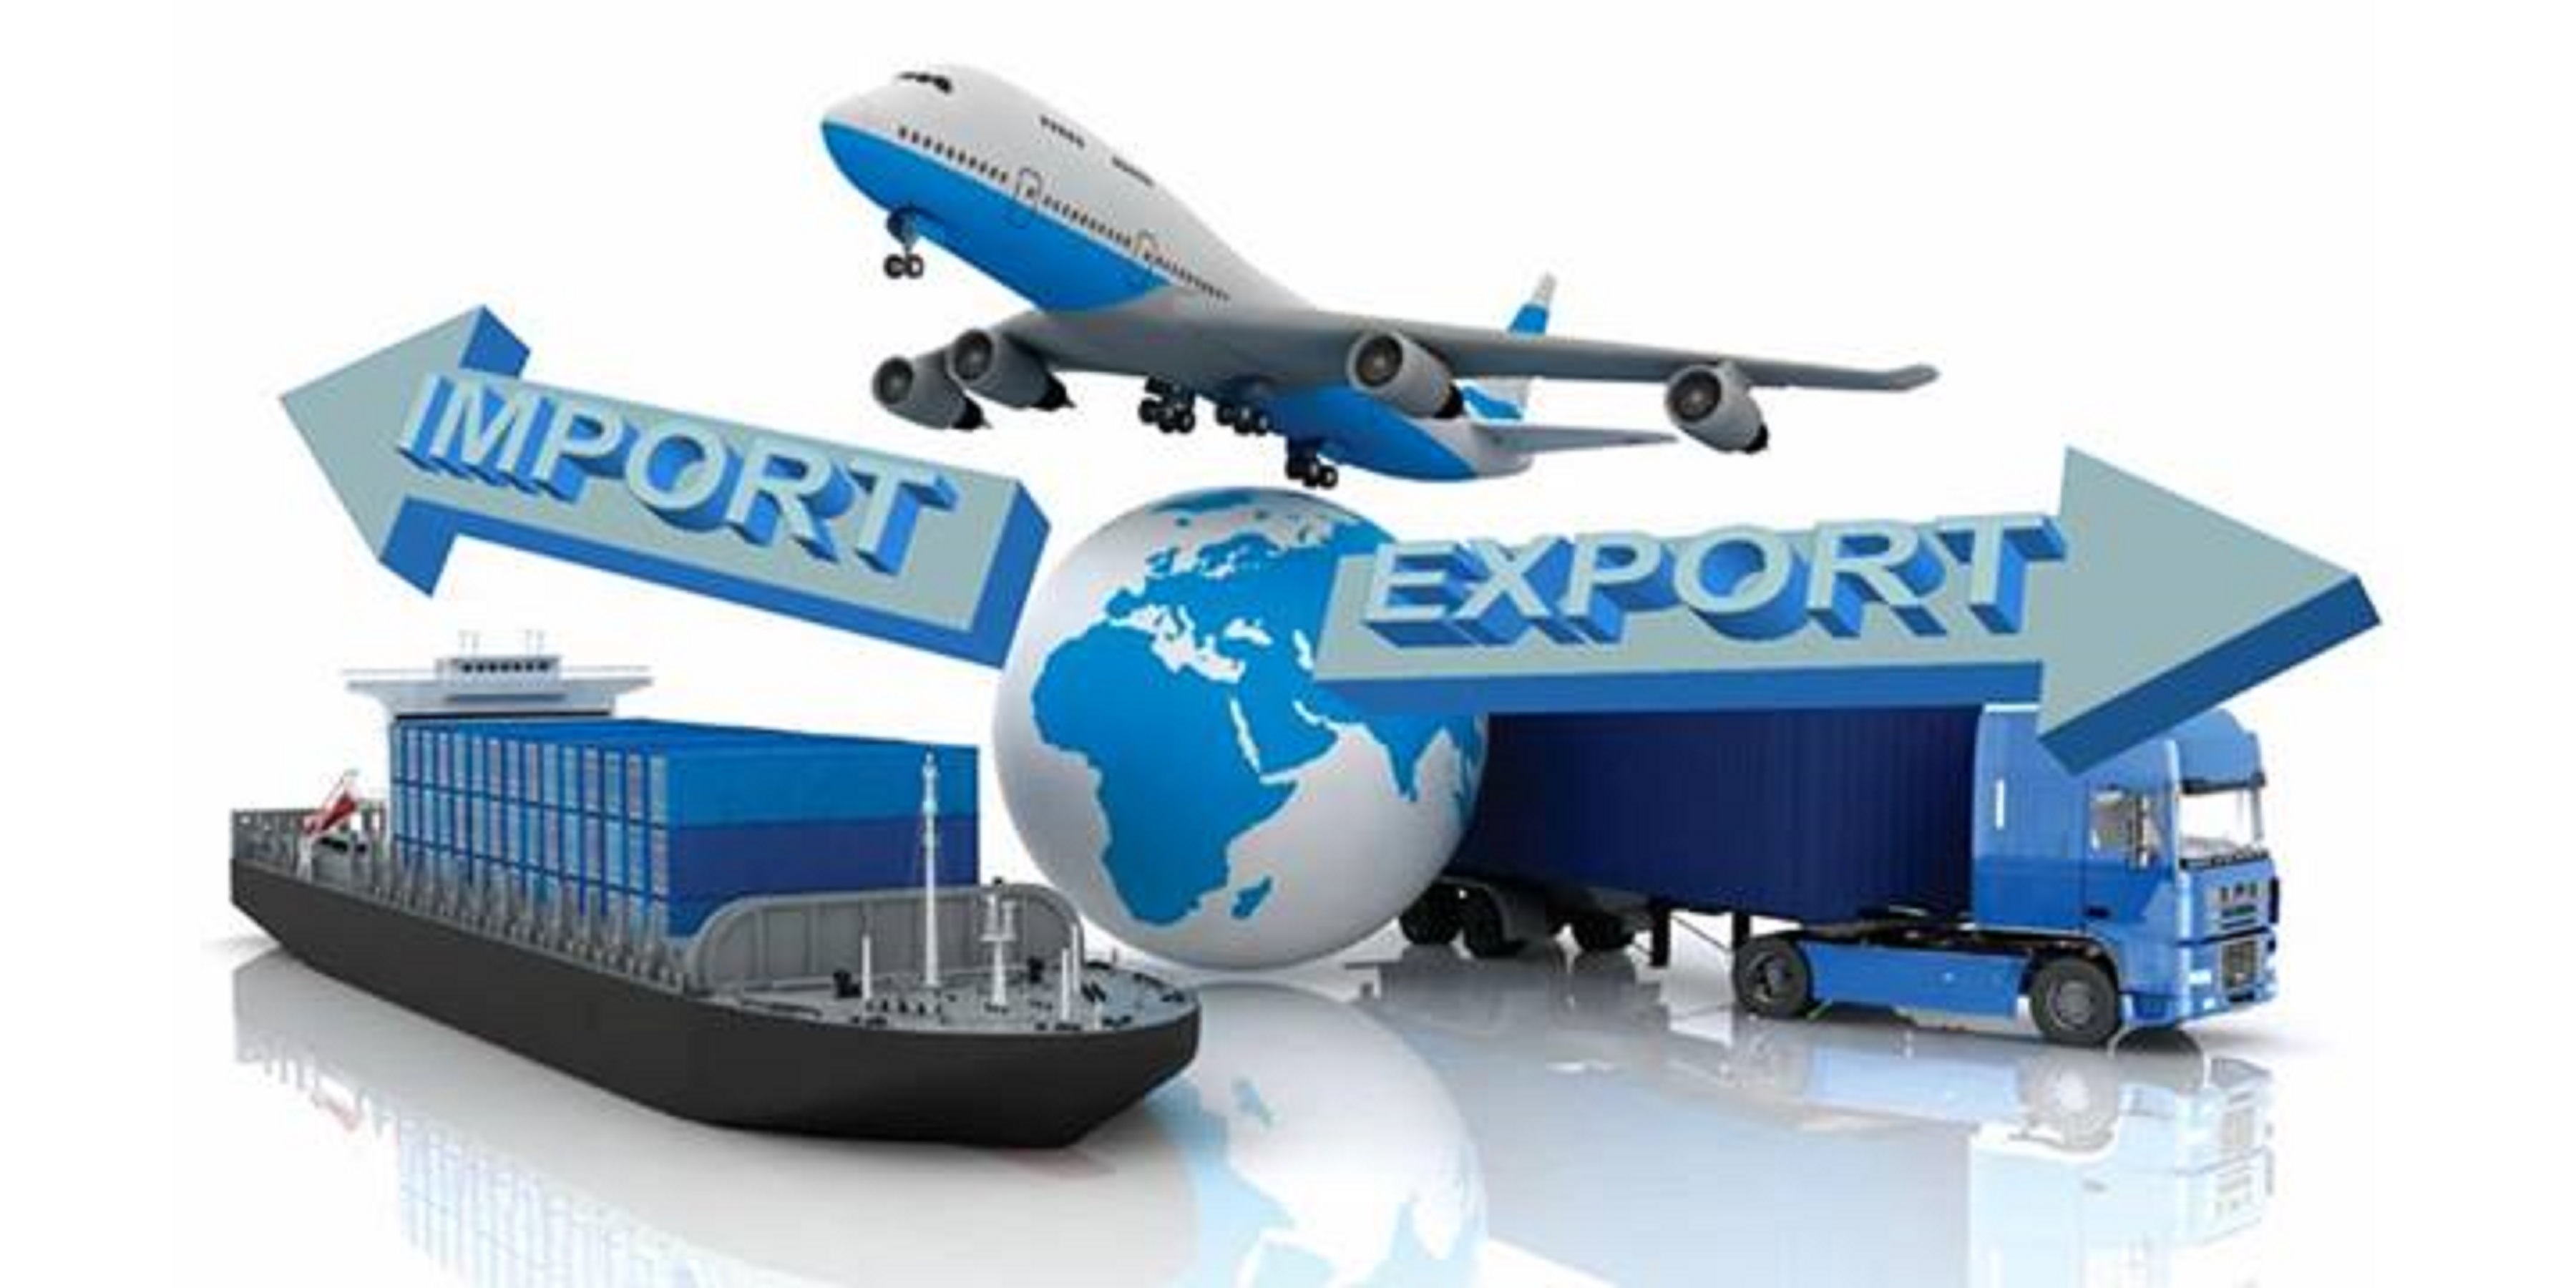 Chứng từ xuất nhập khẩu là như thế nào, bạn hiểu chưa?